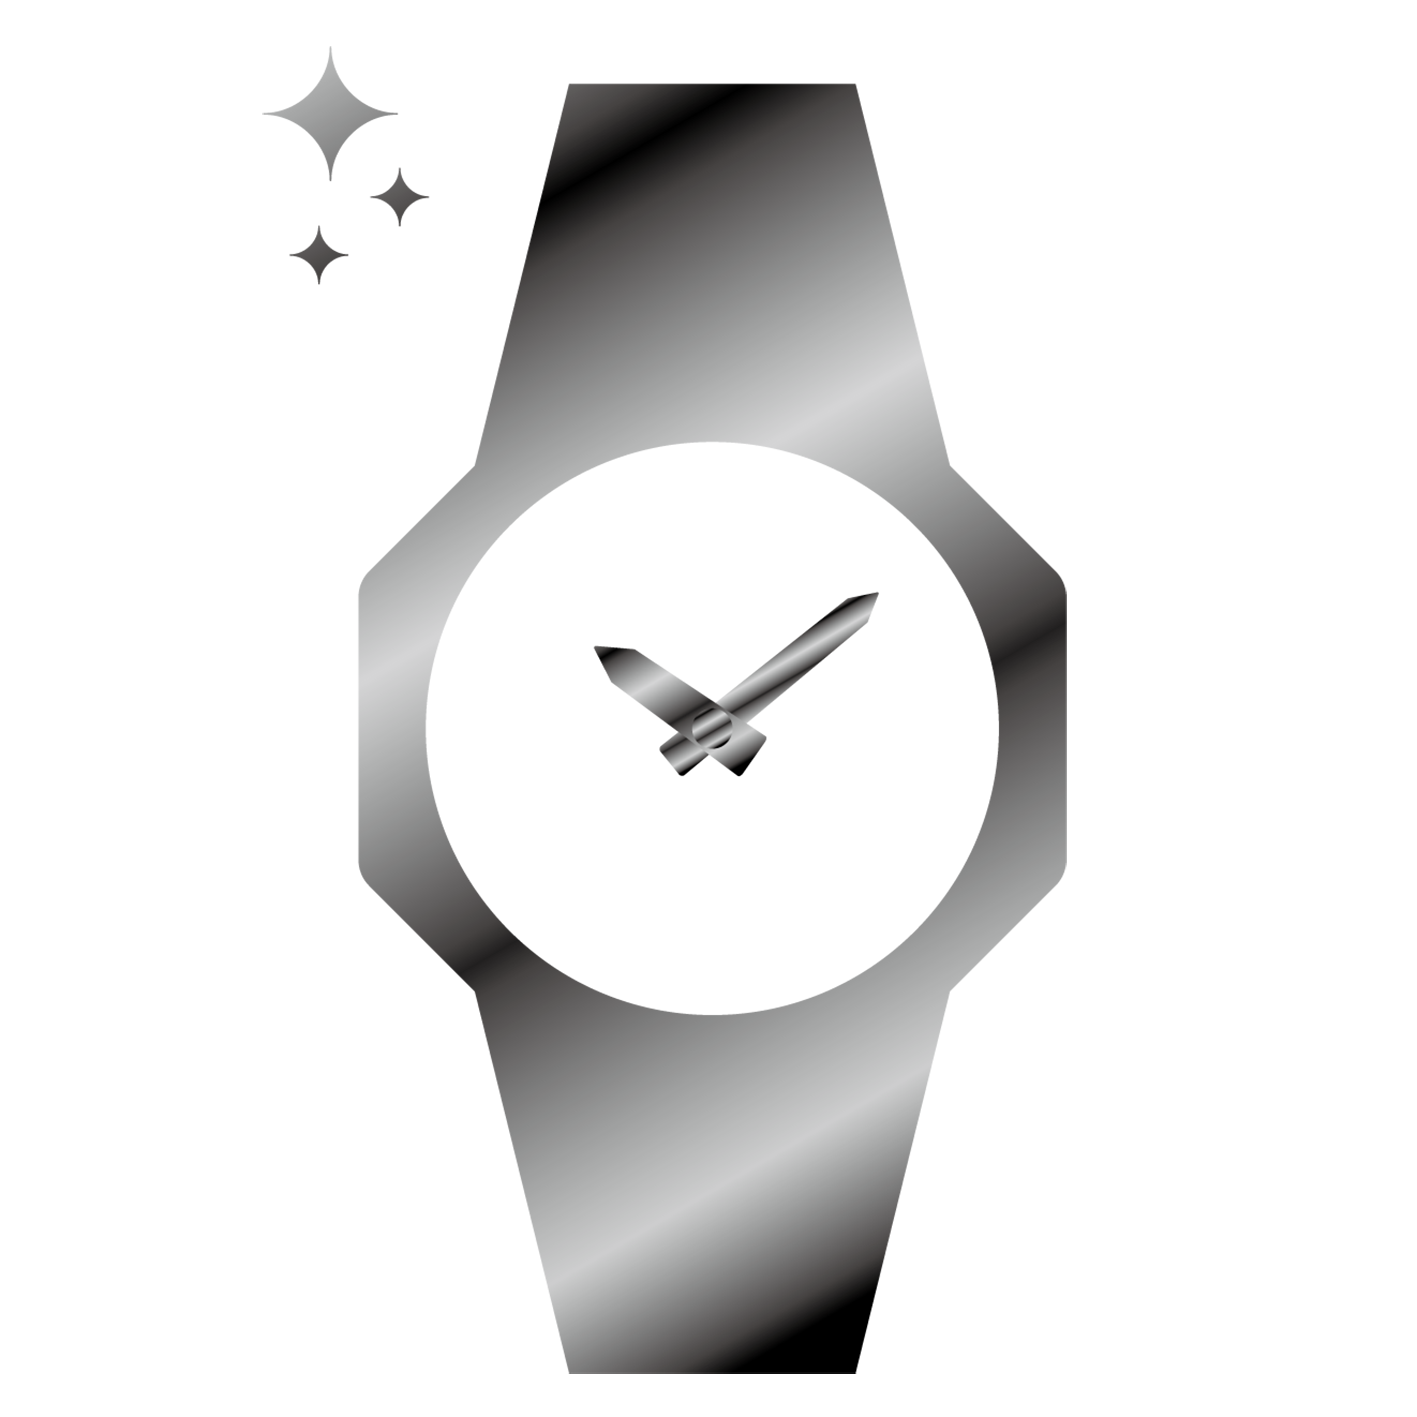 抛光手表的图标表示运用了精美抛光金属